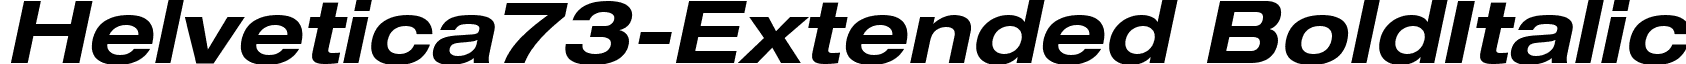 Helvetica73-Extended BoldItalic font - Helvetica73-Extended Bold Oblique.ttf